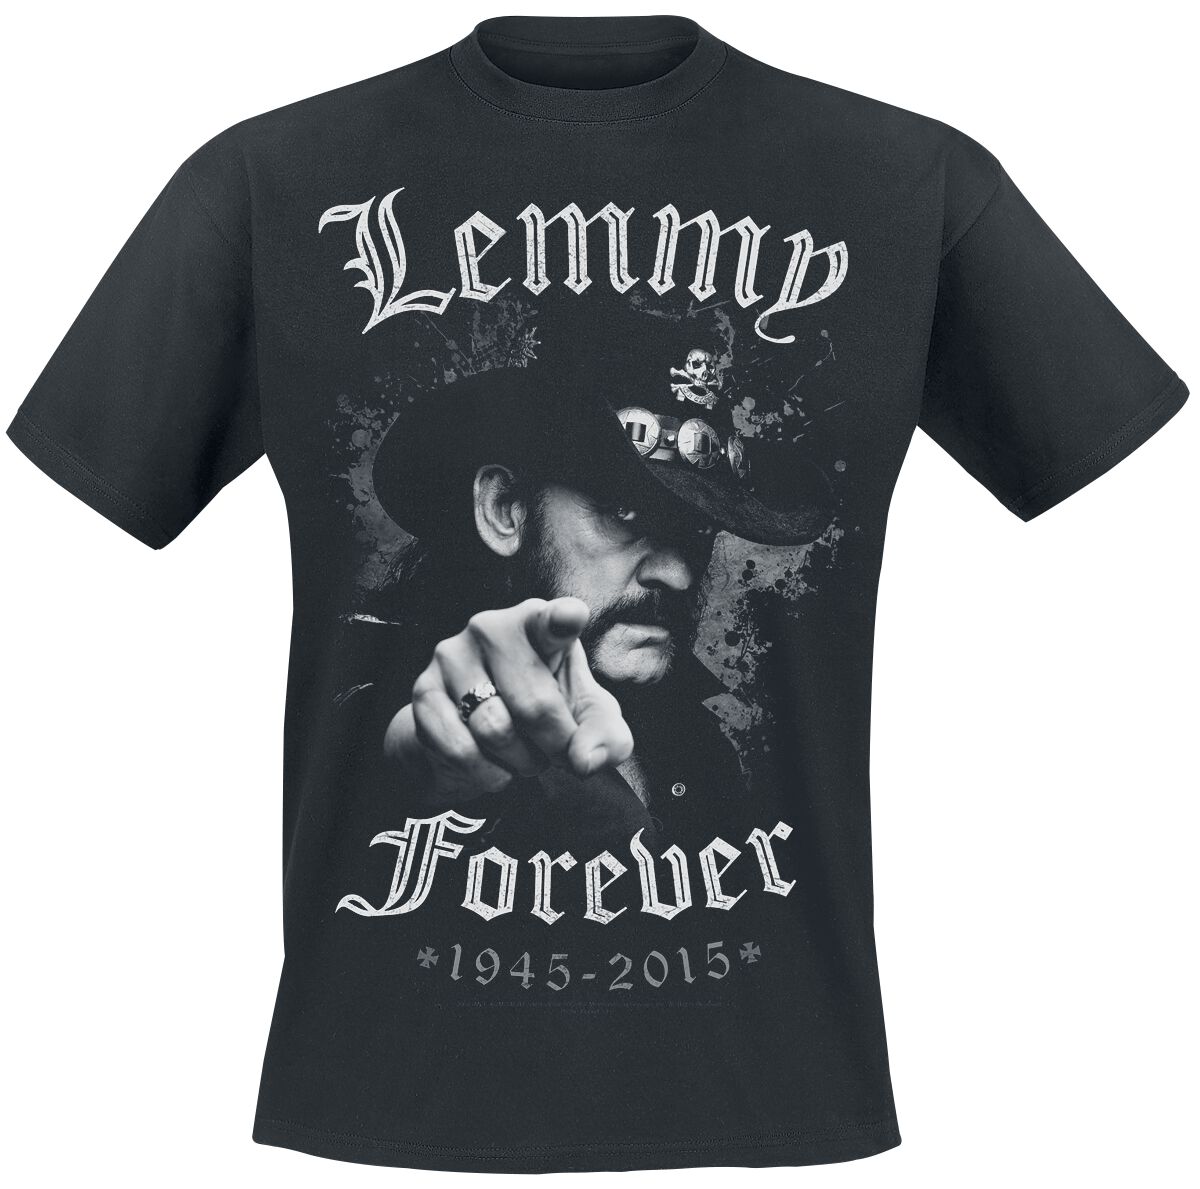 Motörhead T-Shirt - Lemmy - Forever - M bis 5XL - für Männer - Größe 5XL - schwarz  - EMP exklusives Merchandise!